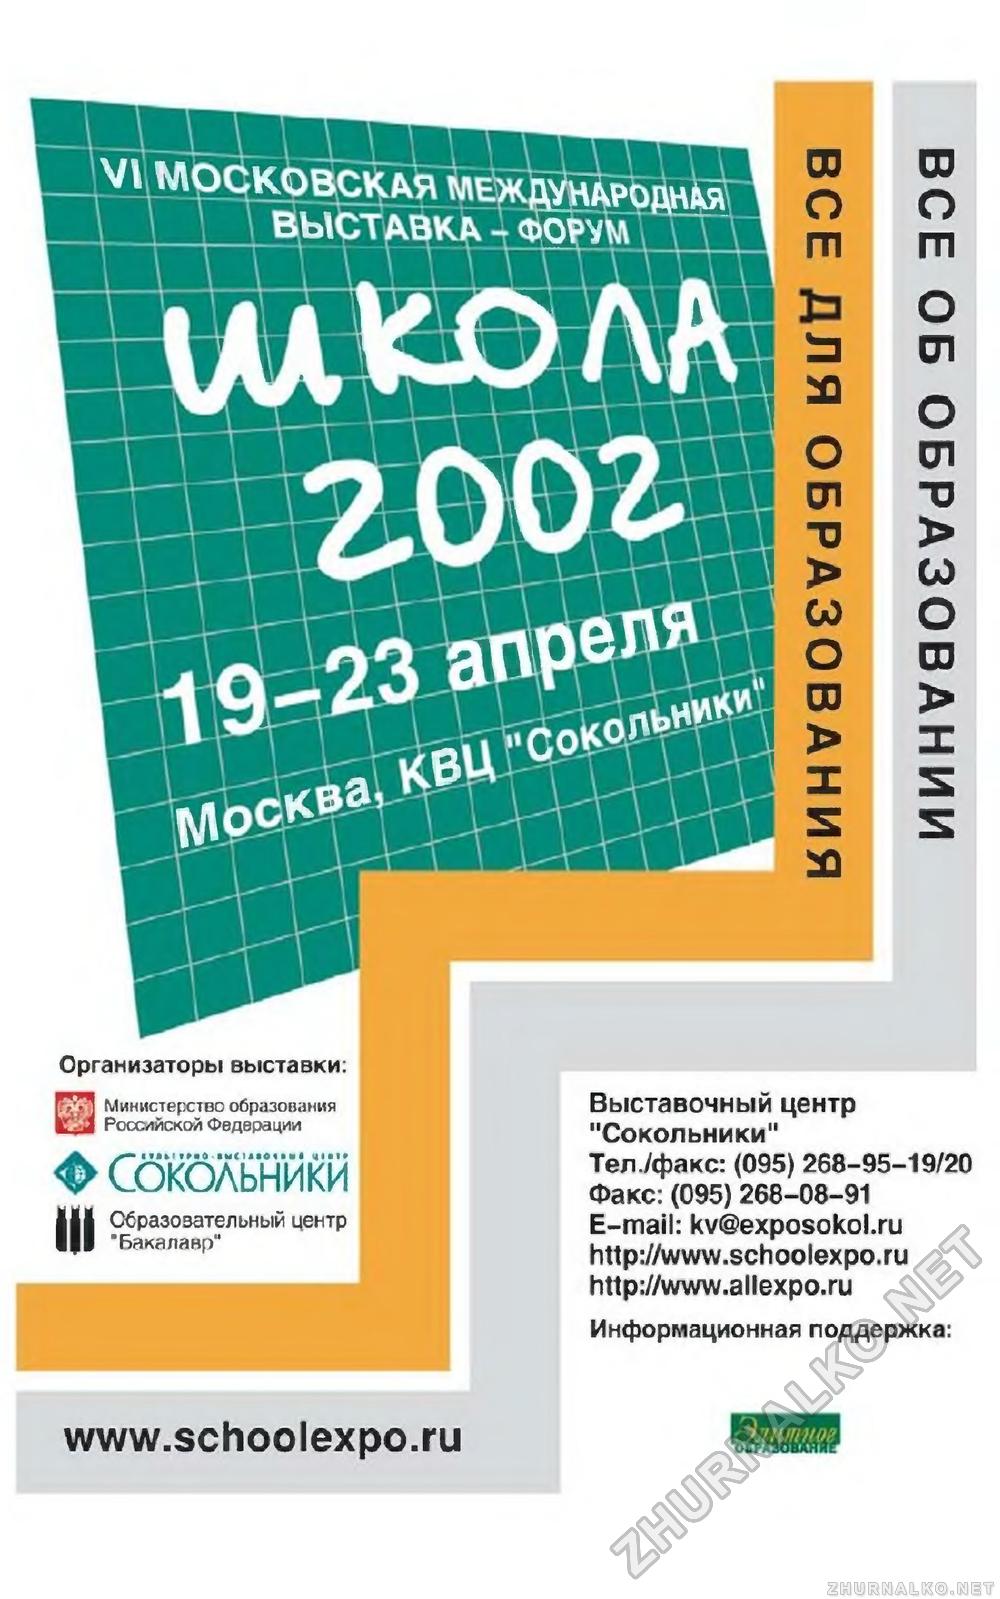   2002-03,  29